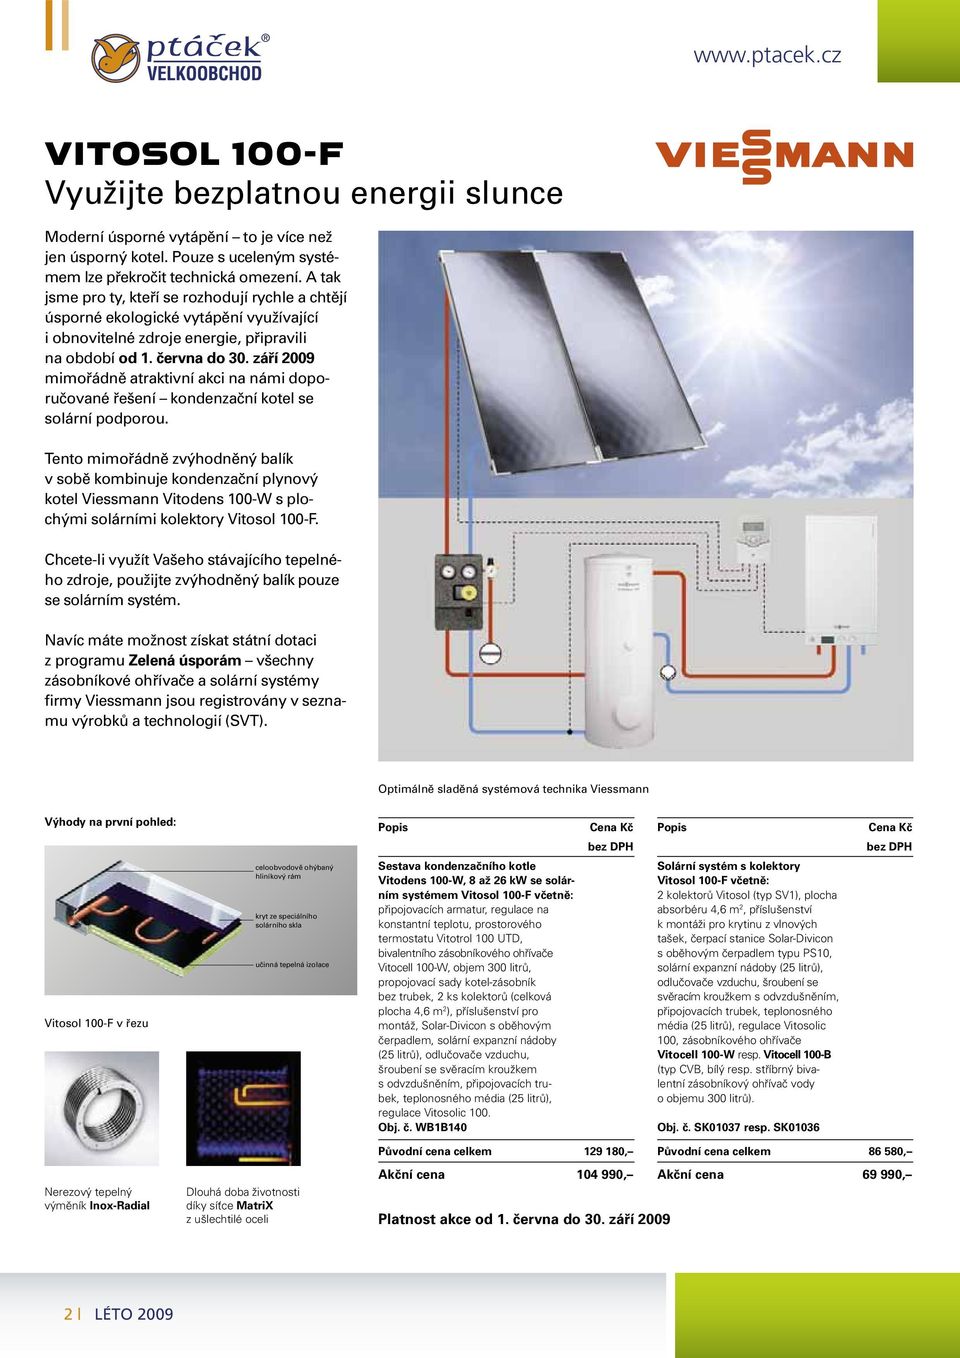 září 2009 mimořádně atraktivní akci na námi doporučované řešení kondenzační kotel se solární podporou.